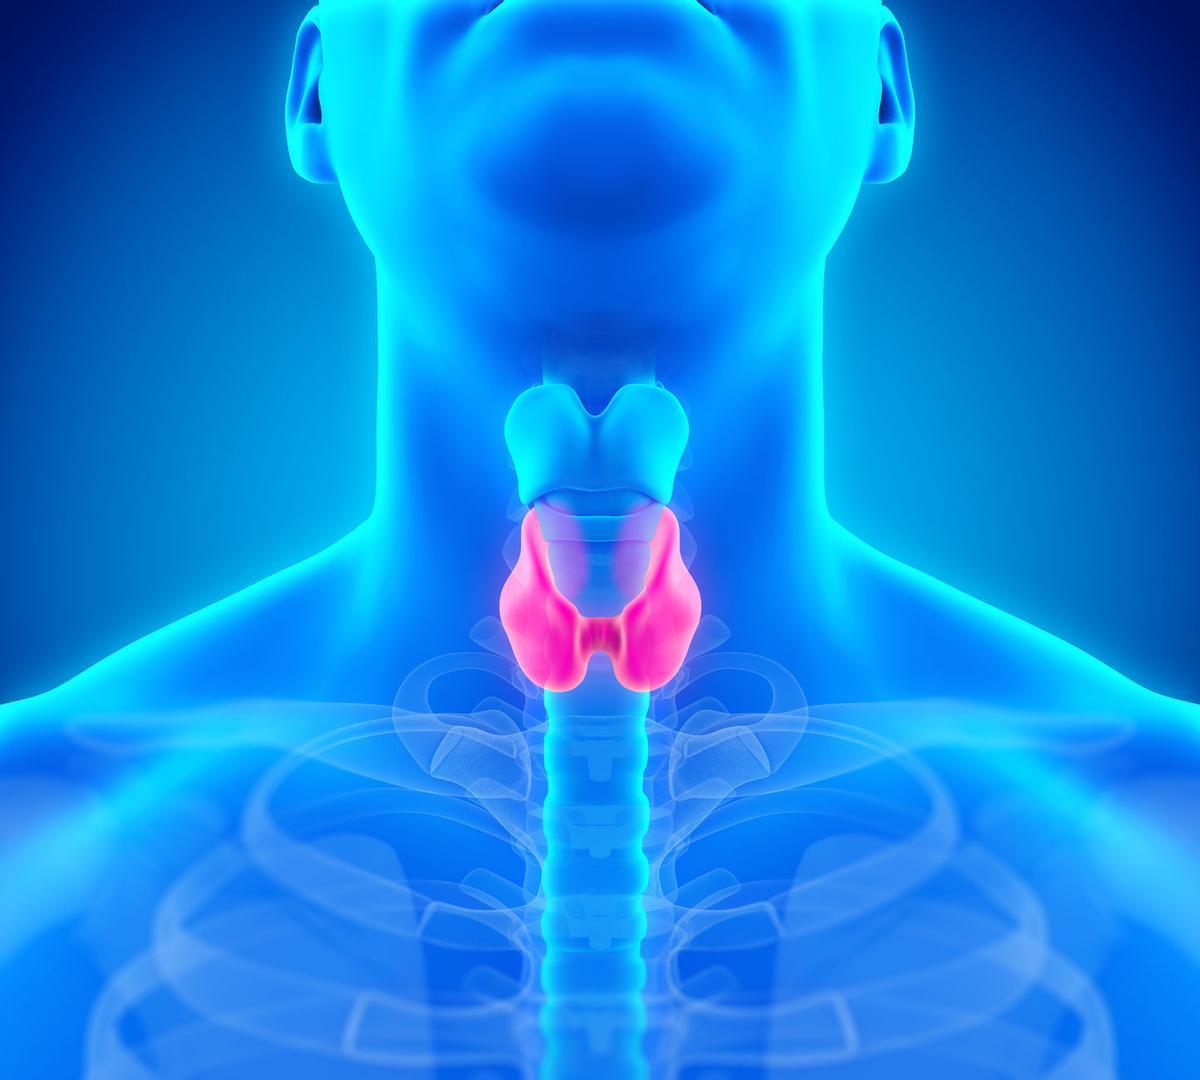 ilustración de la anatomía de la glándula tiroides humana causante del hipotiroidismo